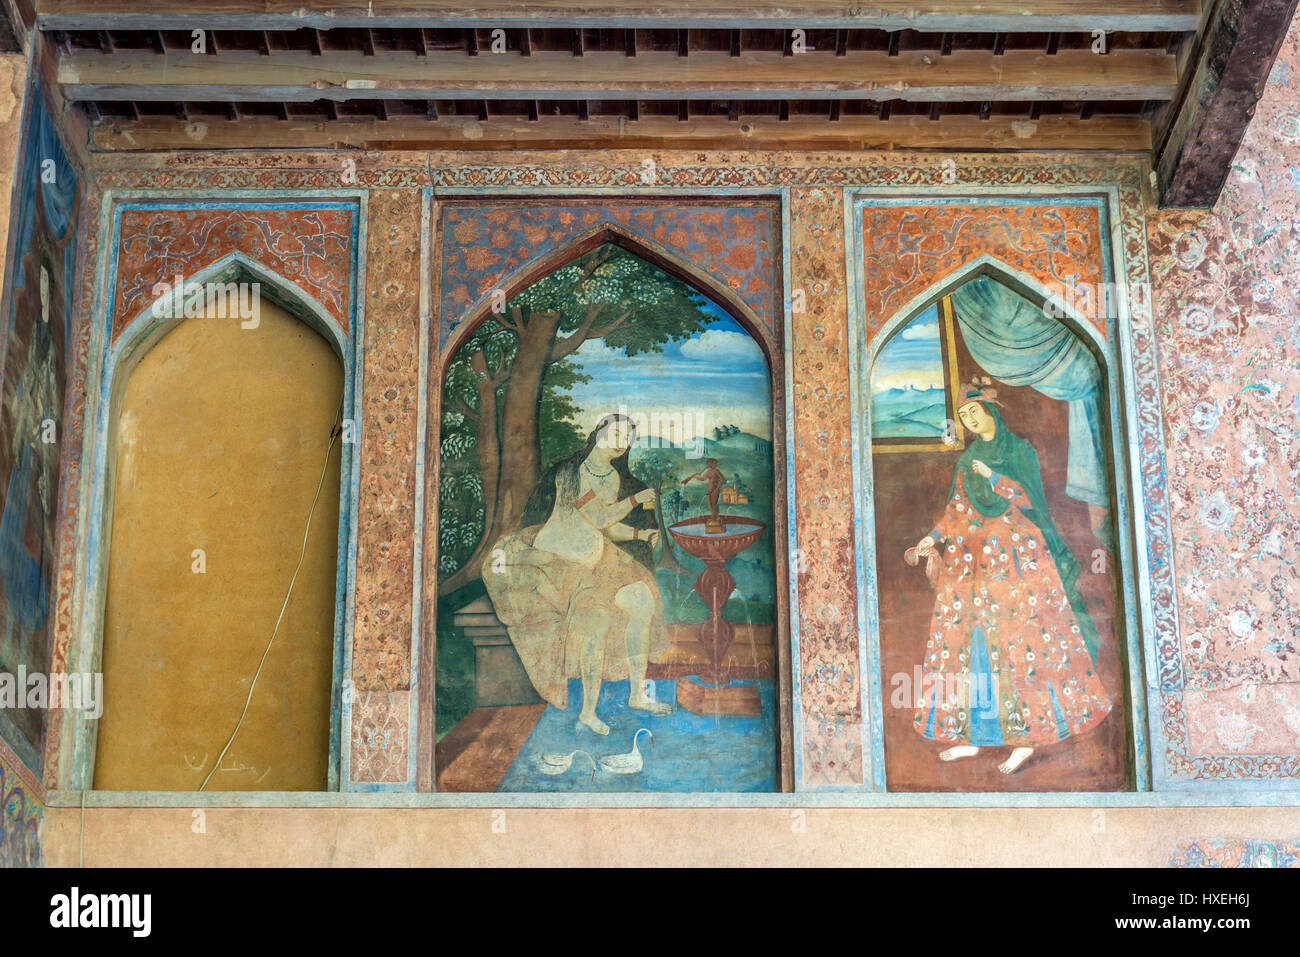 Fresque sur le mur extérieur du palais de quarante colonnes (Chehel Sotoun) à Ispahan, capitale de la Province d'Ispahan en Iran Banque D'Images